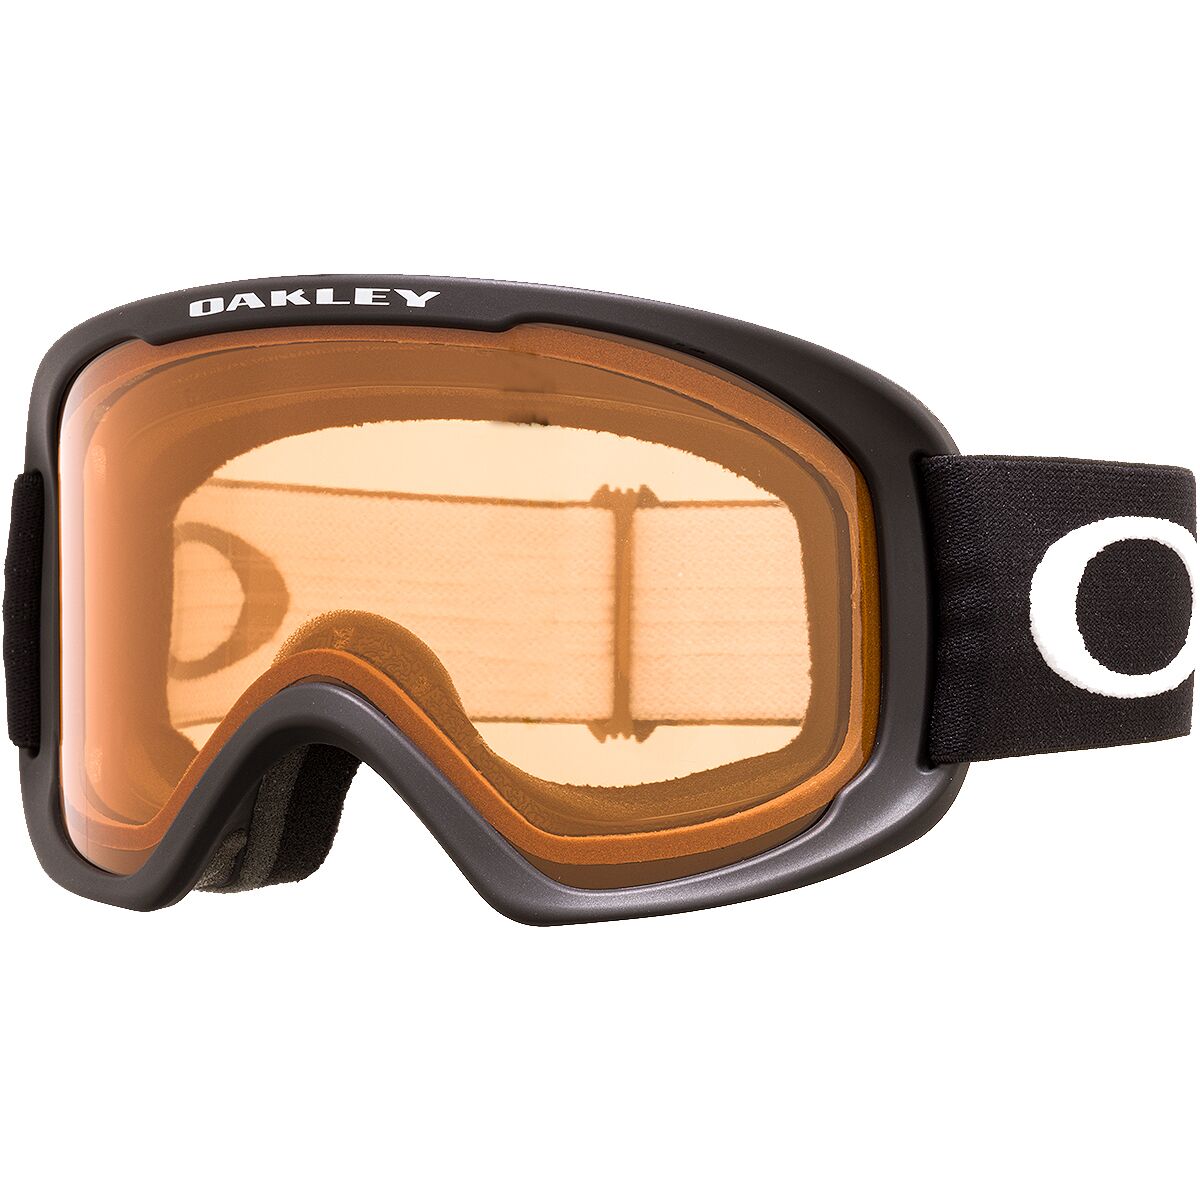 Photos - Ski Goggles Oakley O Frame 2.0 Pro XL Goggles 